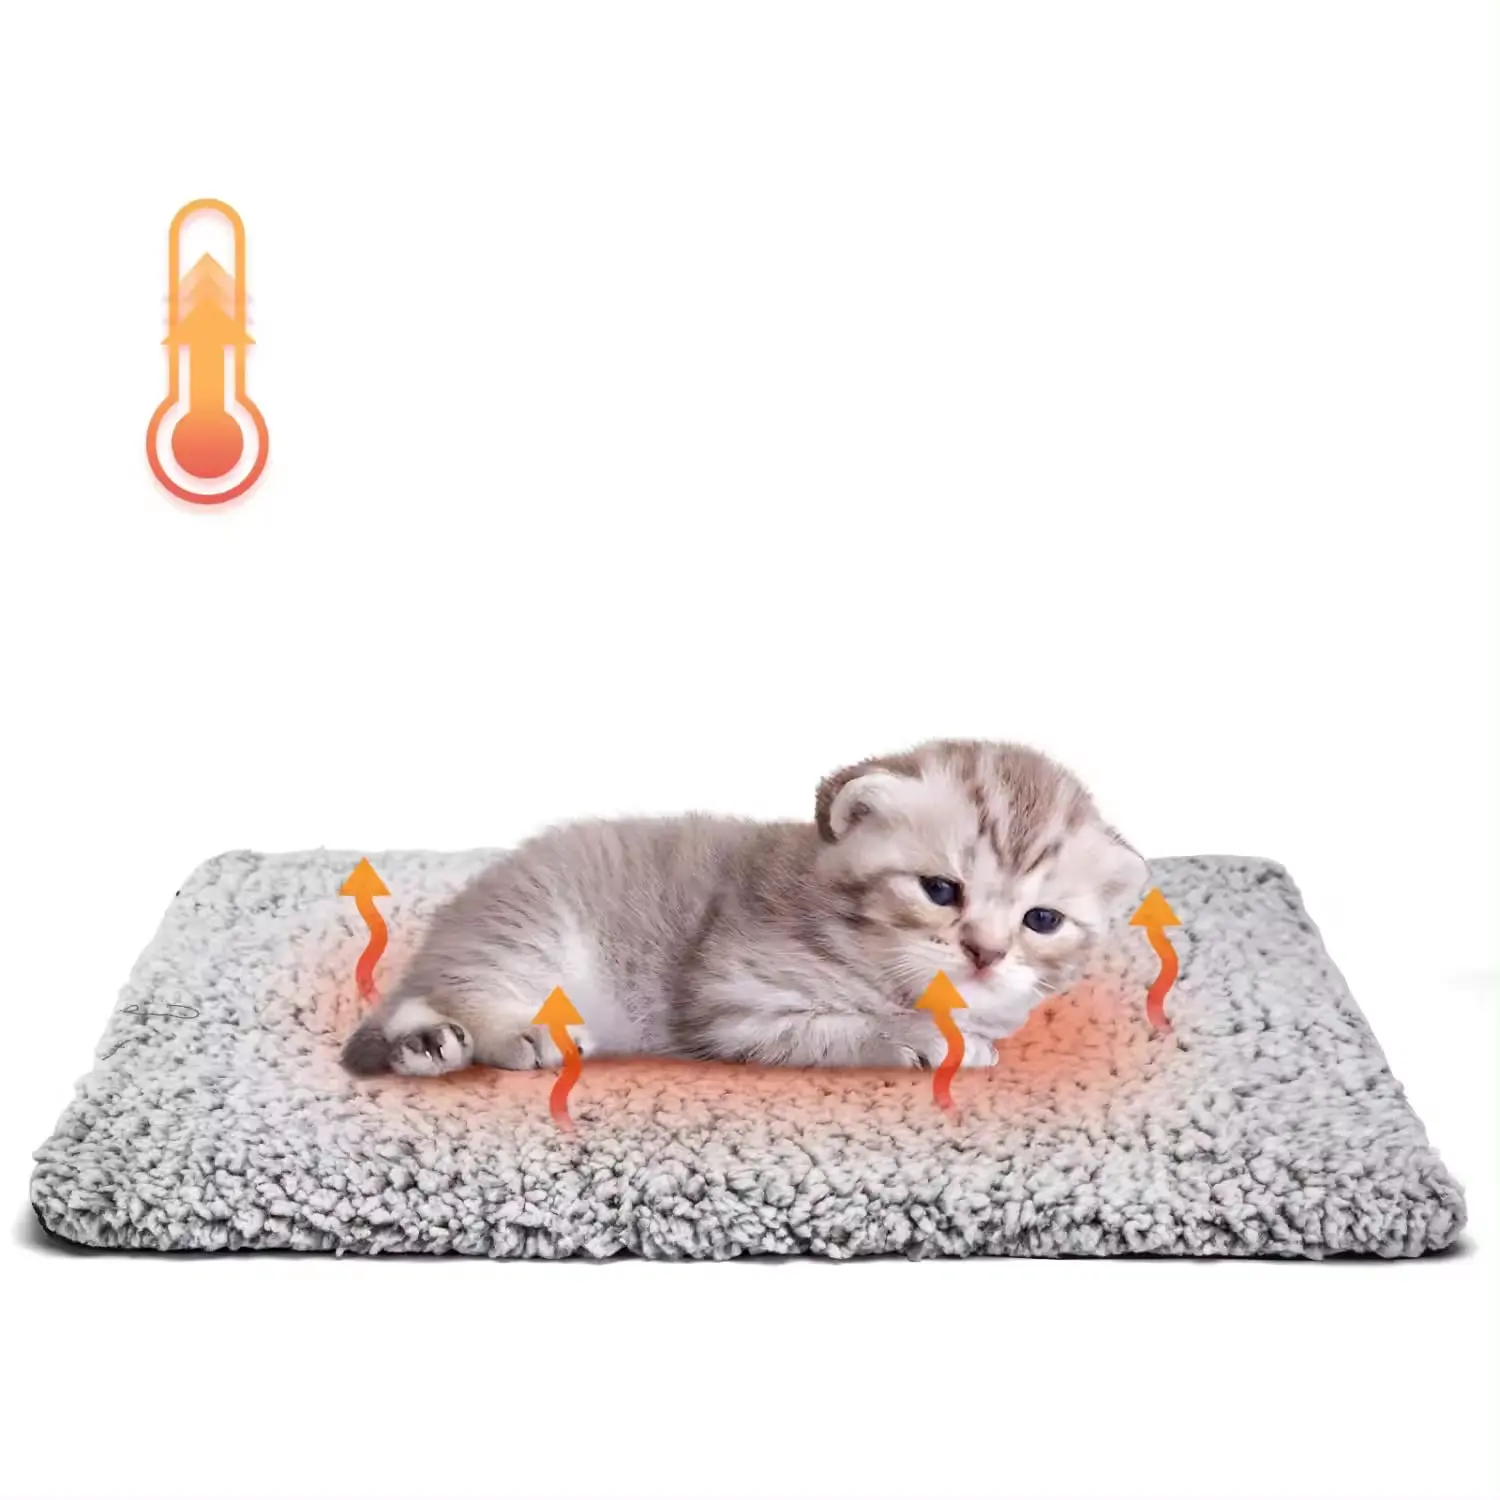 Tappetino caldo per animali domestici coperta di calore per animali domestici cuscinetto riscaldante nido cucciolo piccolo tappetino impermeabile a tenuta stagna a temperatura costante